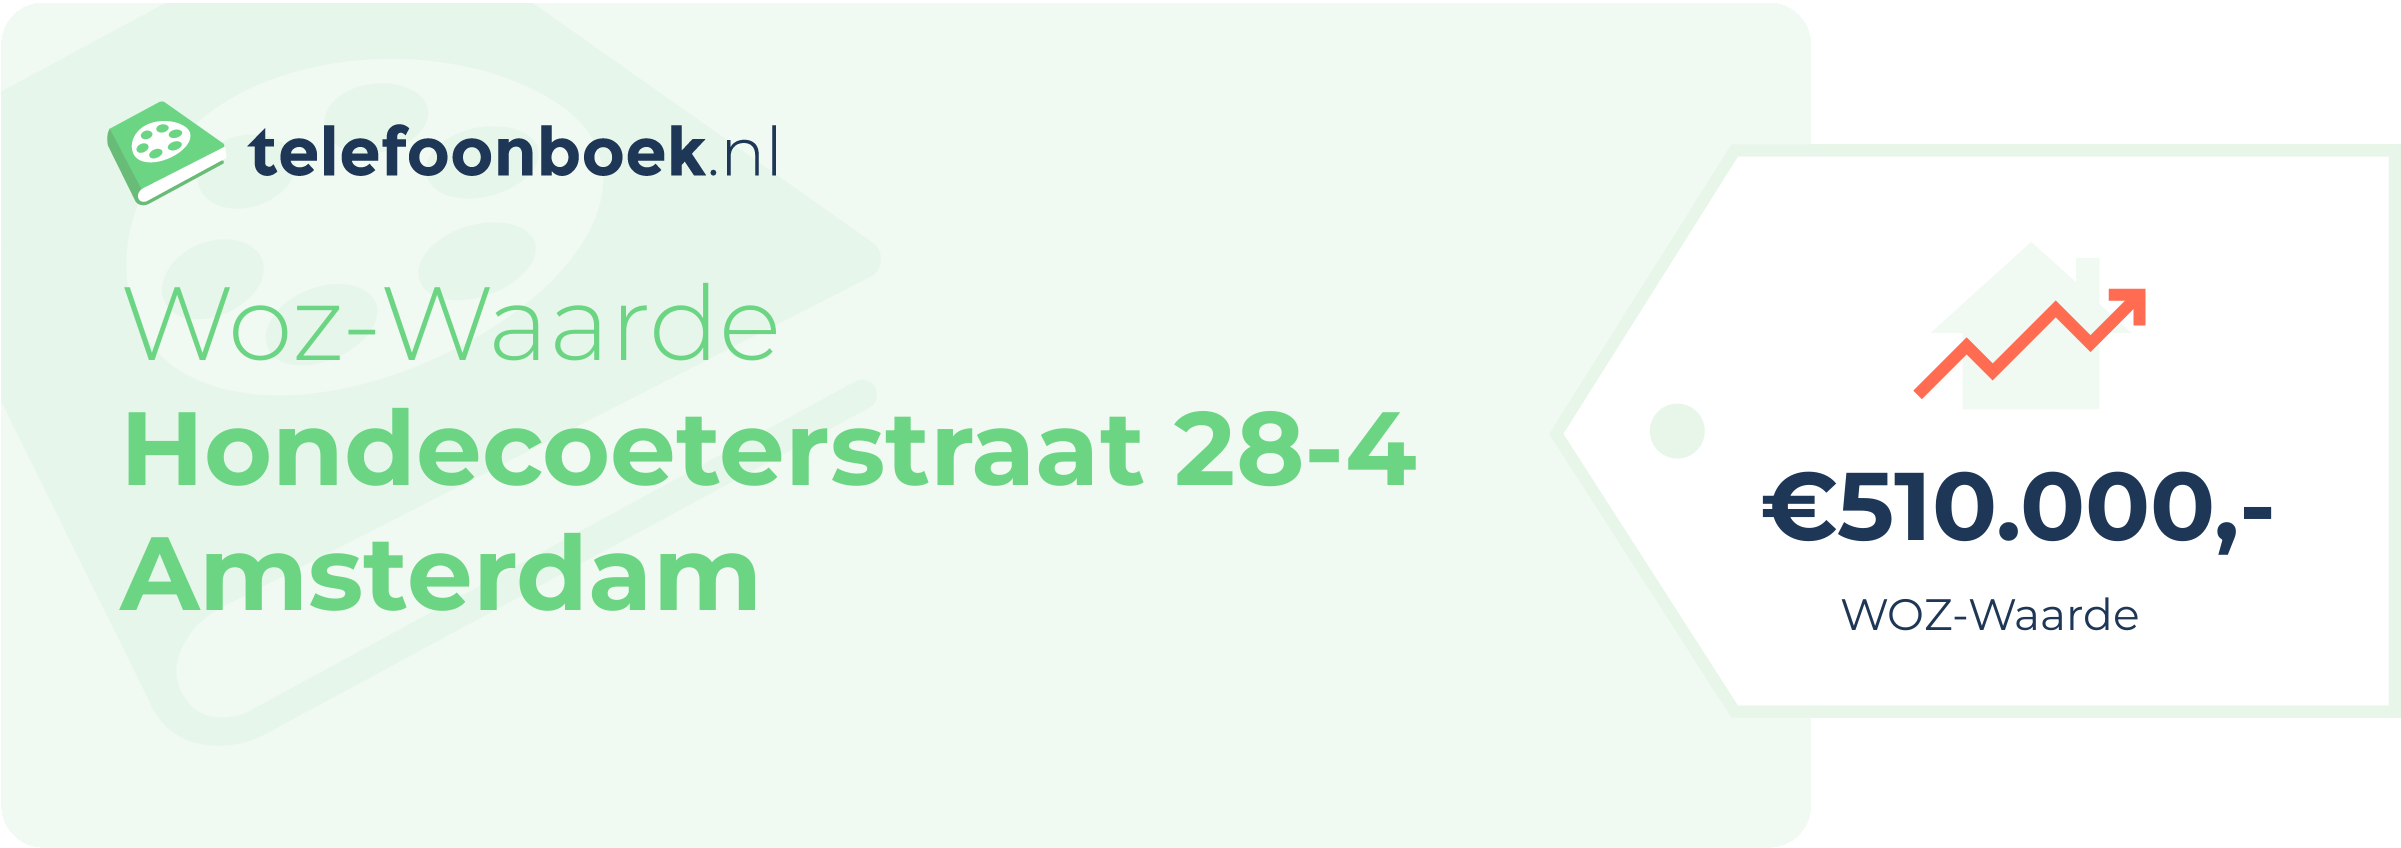 WOZ-waarde Hondecoeterstraat 28-4 Amsterdam